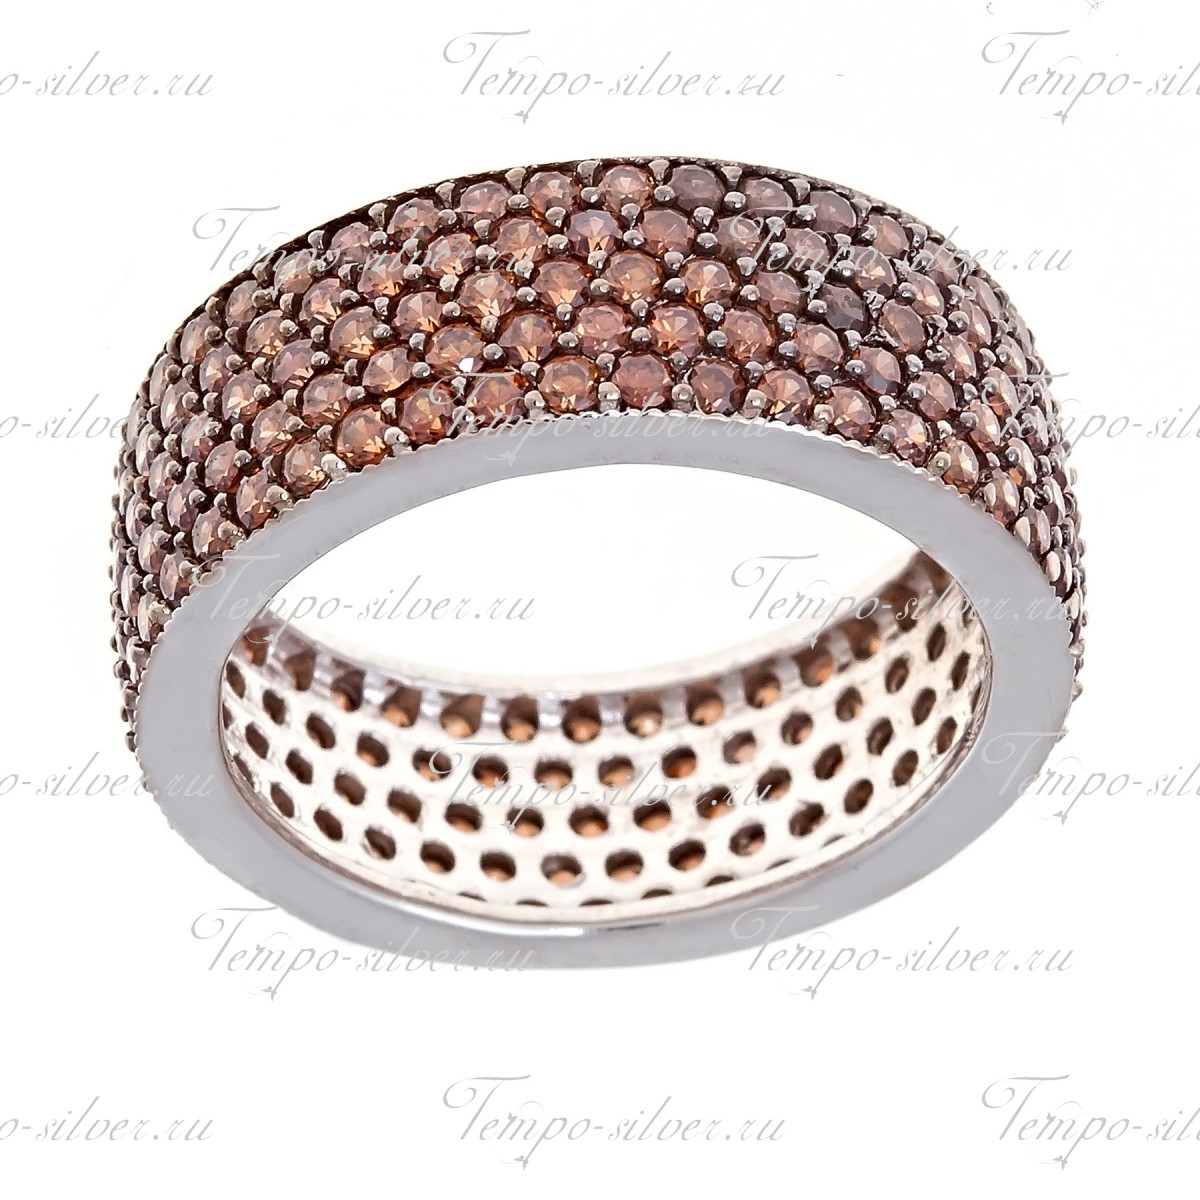 Кольцо из серебра обручальной формы, украшенное пятью рядами бледно-коричневых камней цена